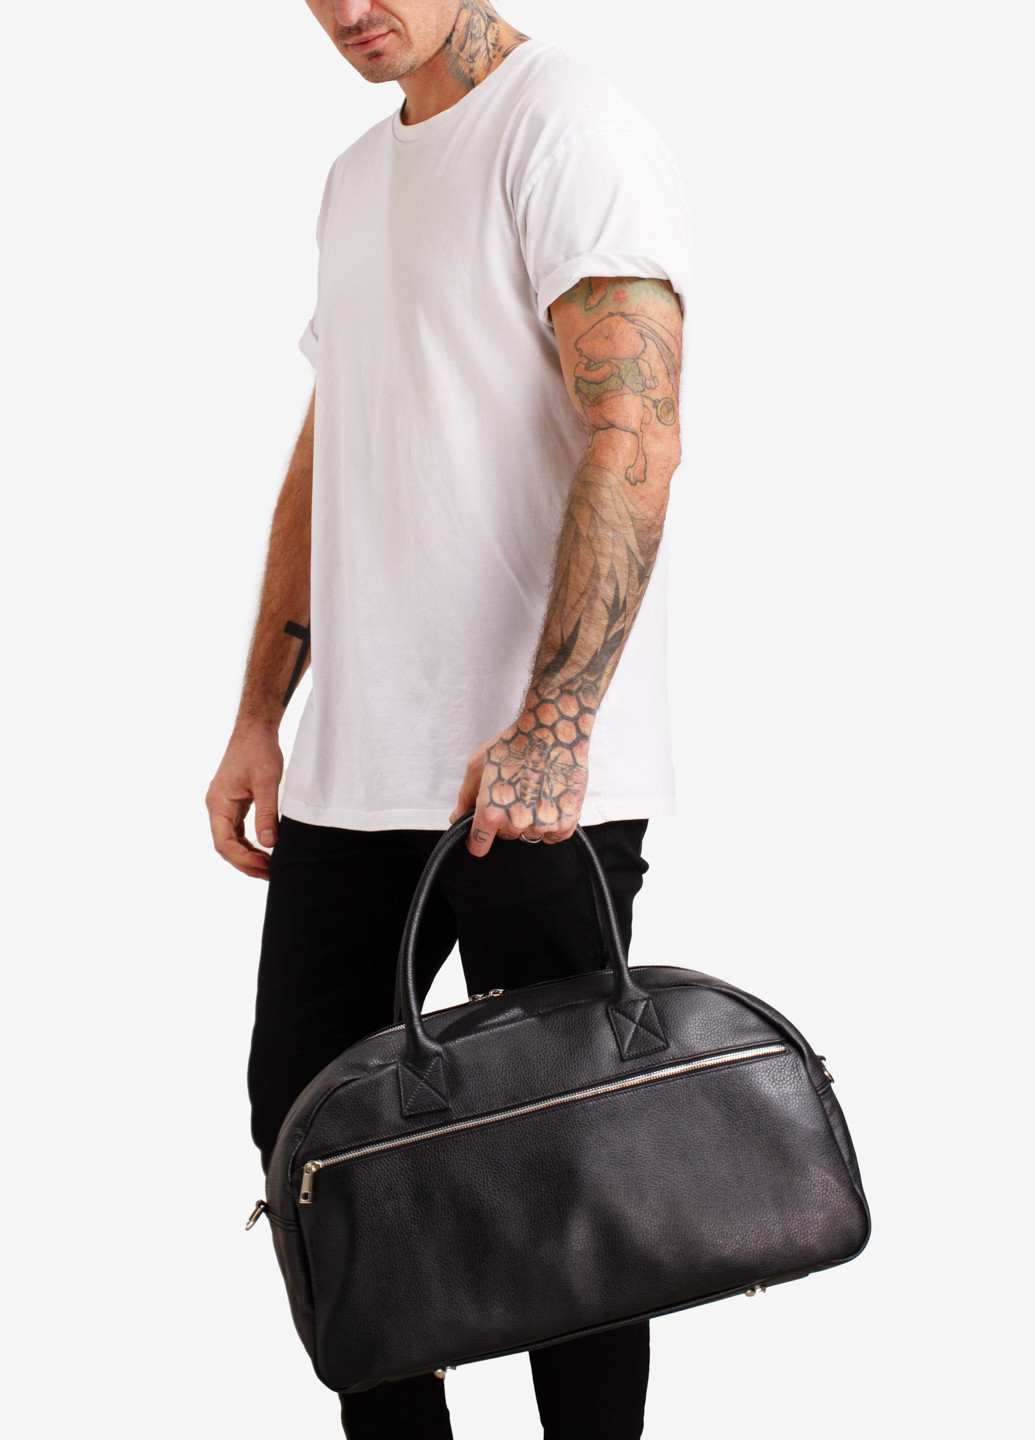 Сумка кожаная саквояж большая InBag Travel bag InBag Shop (256131906)